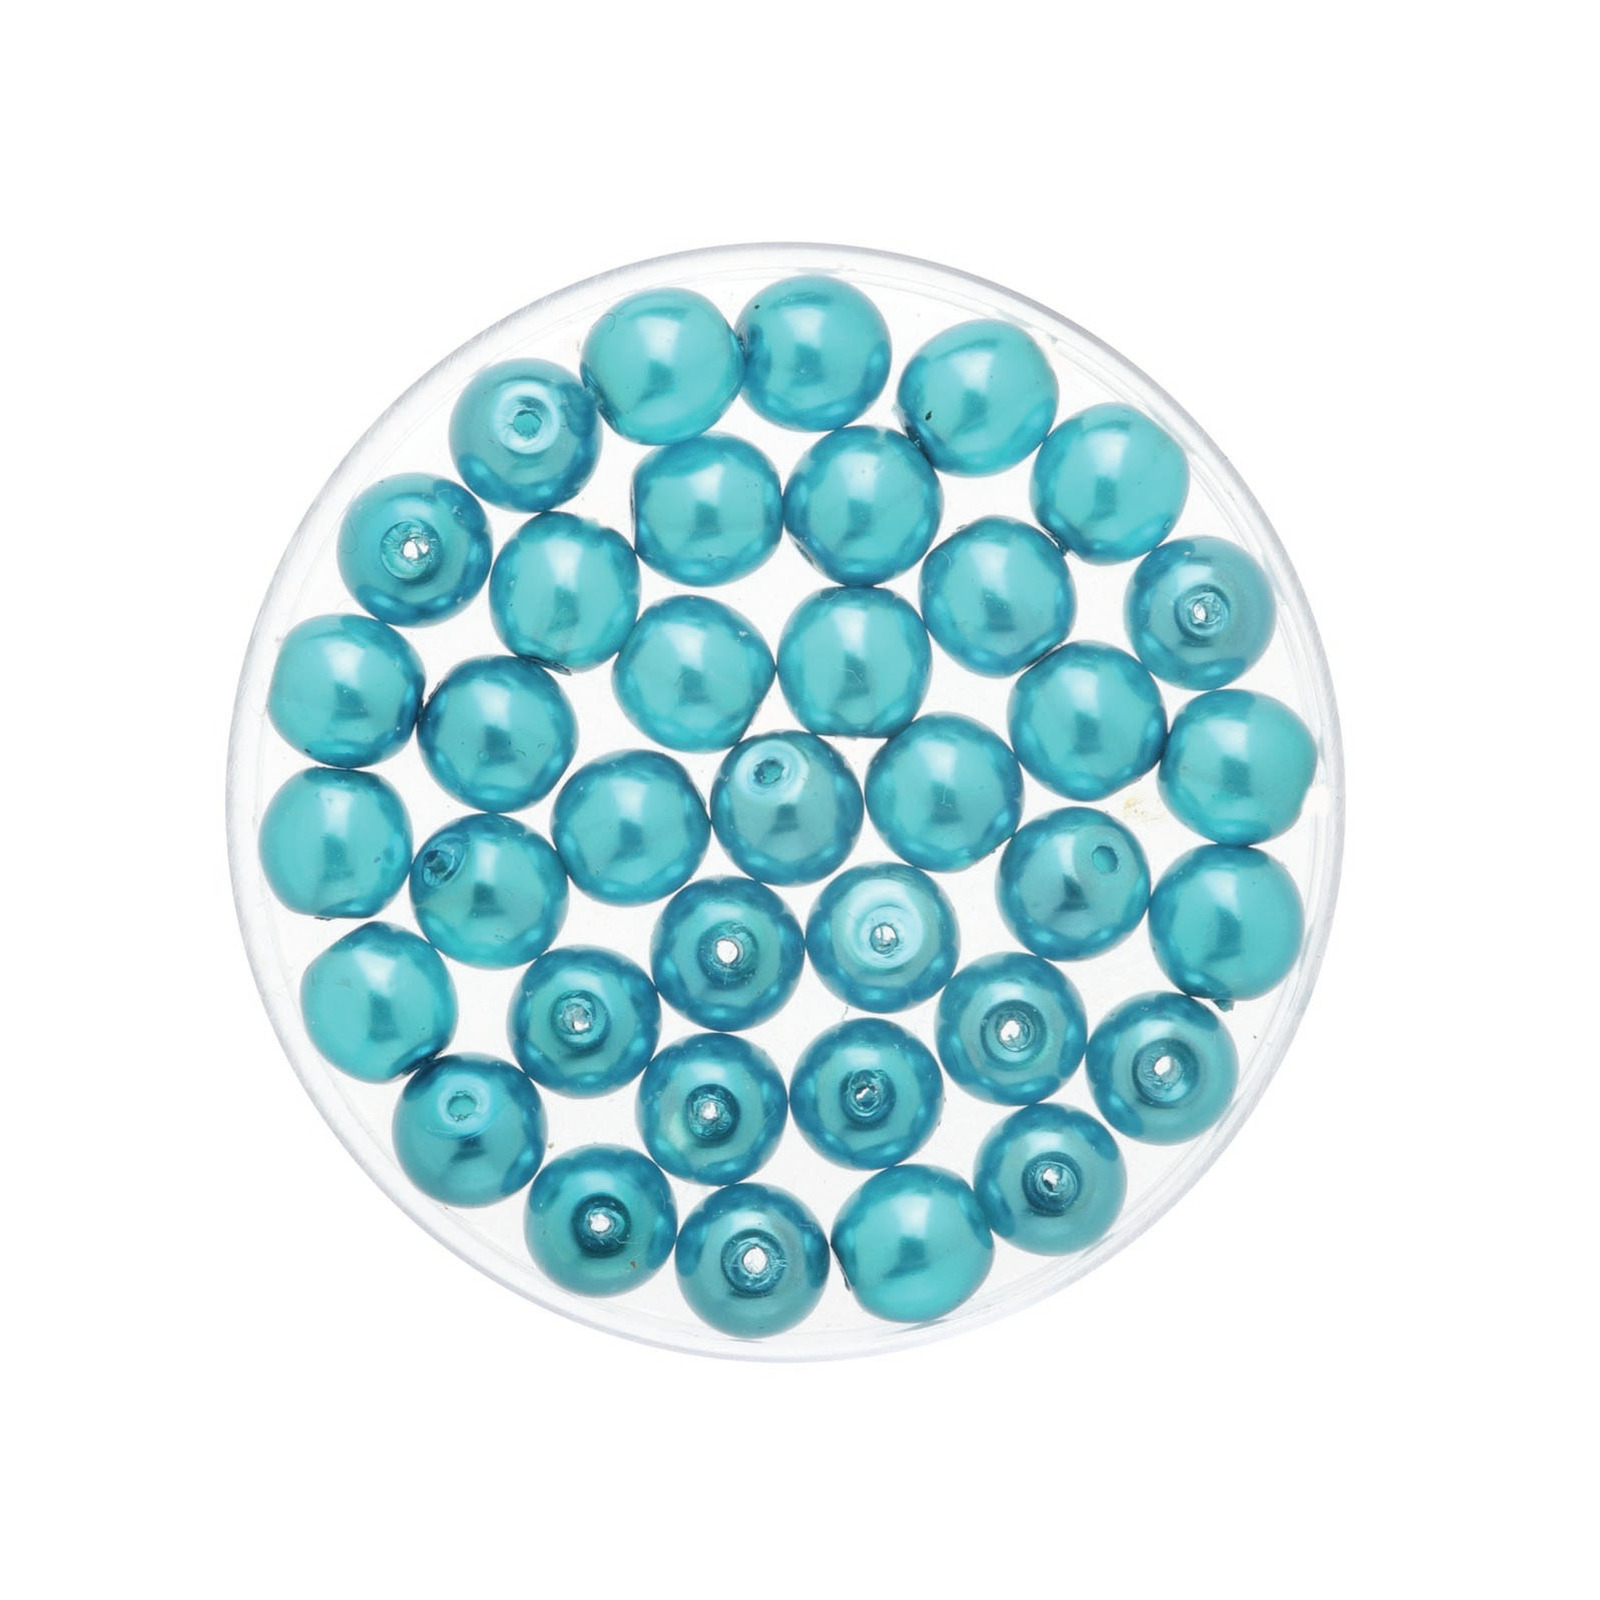 50x stuks sieraden maken Boheemse glaskralen in het transparant turquoise van 6 mm